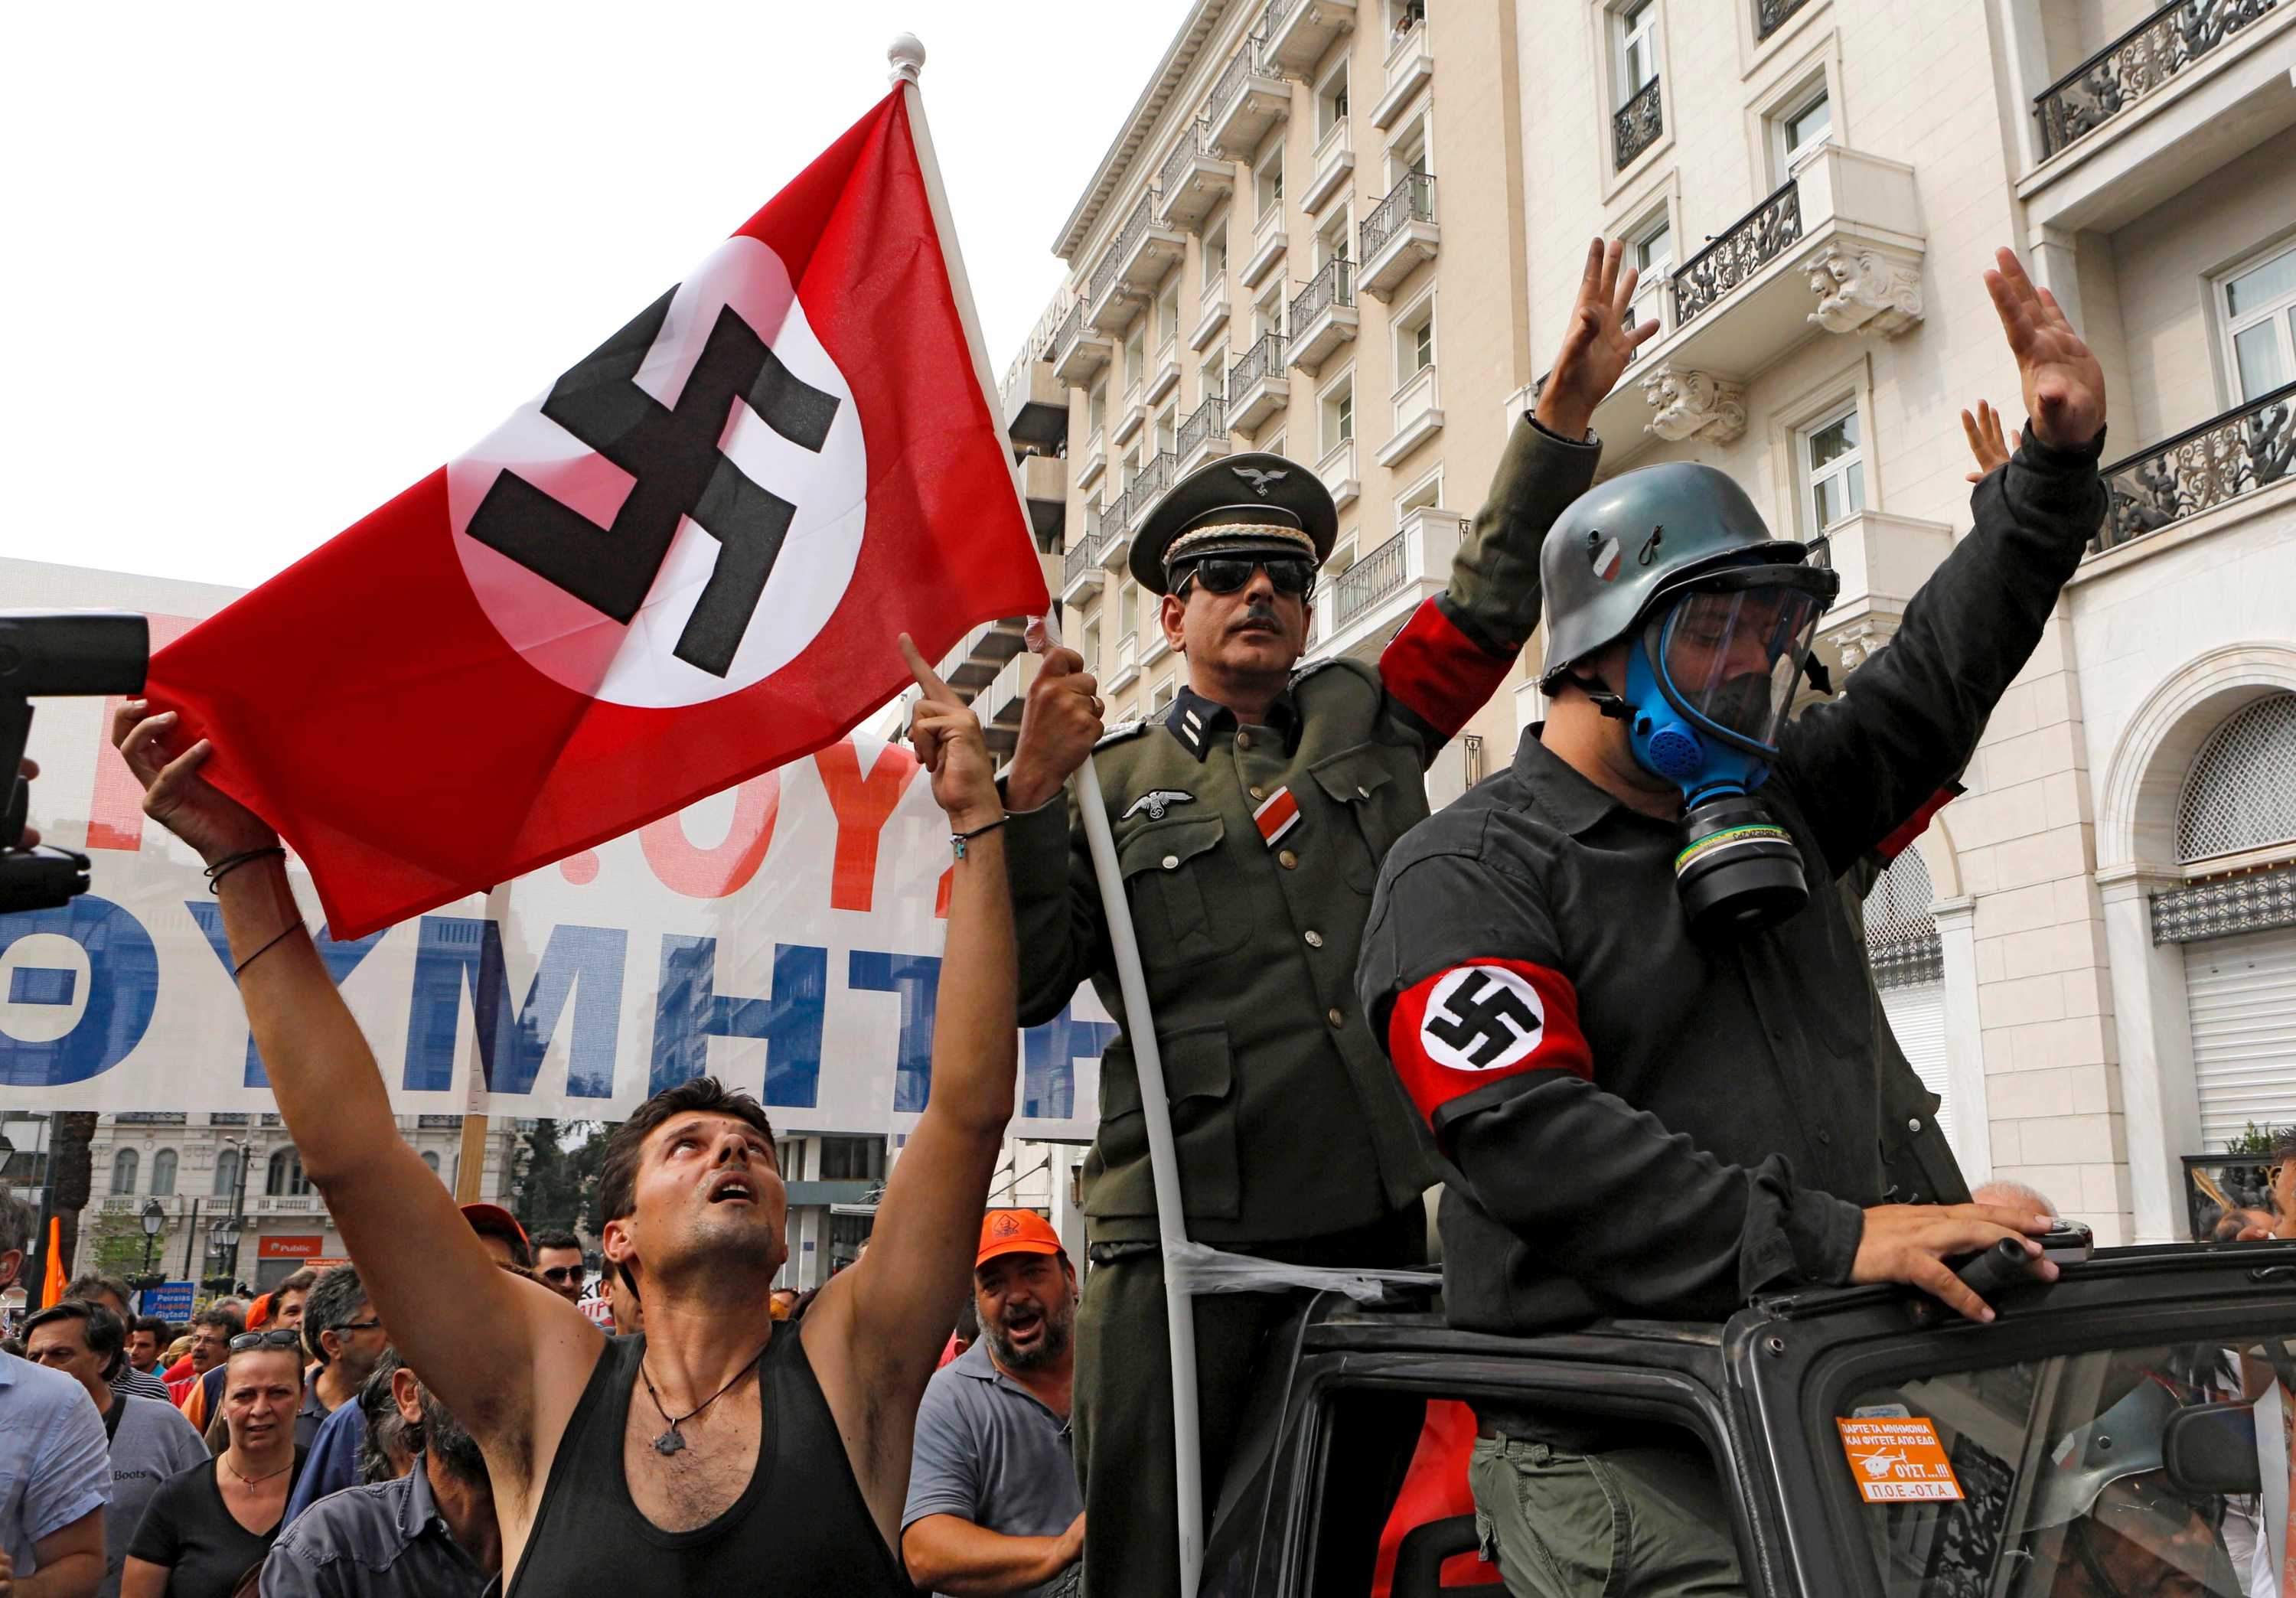 Национал социалистическое движение. Флаг неонацистов Германии. Неонацисты в Германии 2020. Неонацисты в Германии 2022. Современные нацисты.